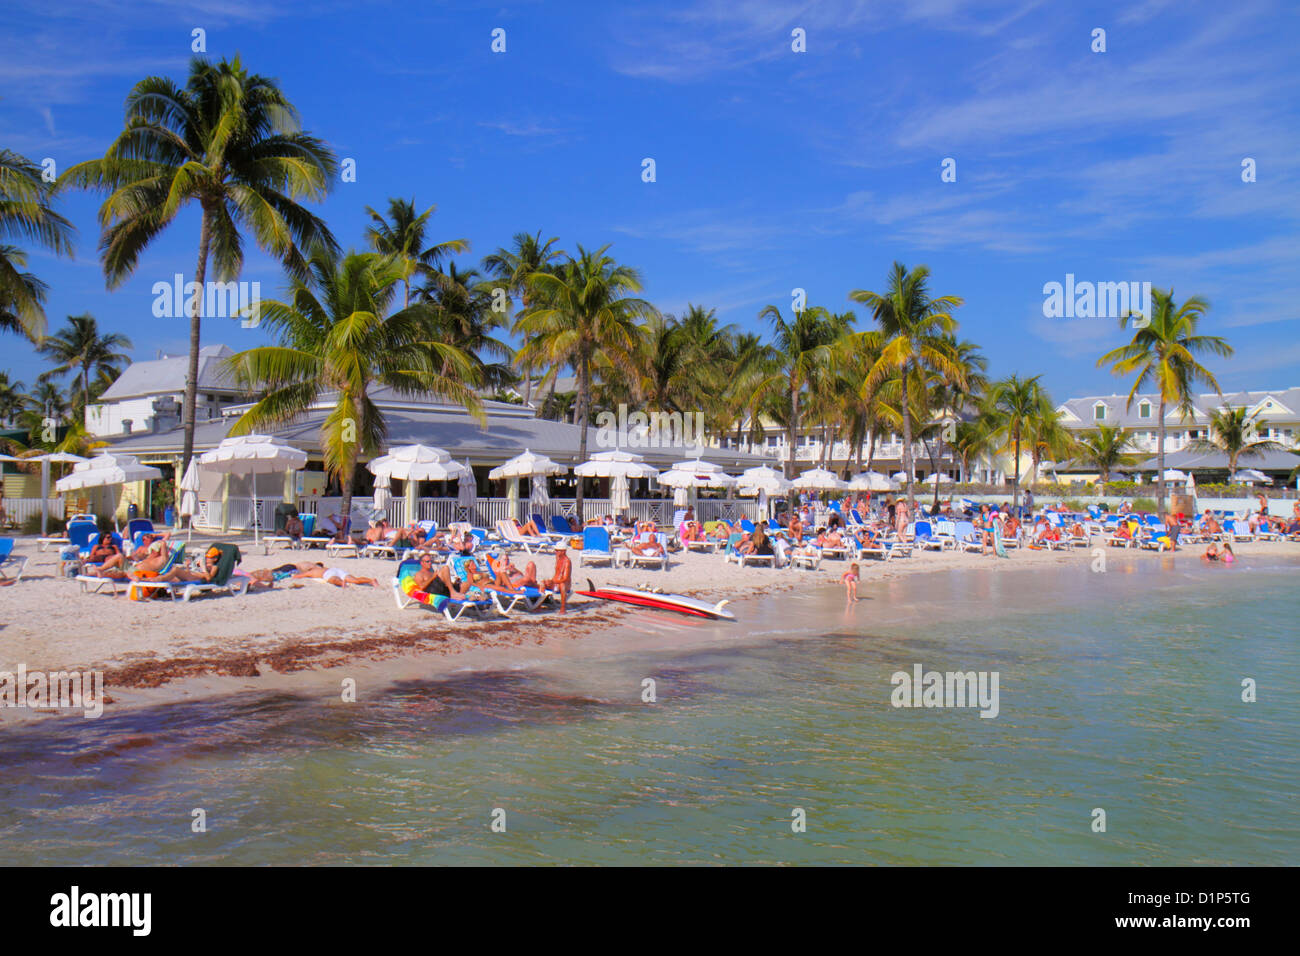 Florida Key West Florida, Keys Duval Street, South Beach, öffentlich, südlichste, Sonnenanbeter, Palmen, Atlantischer Ozean Wasser Besucher reisen Reise Tour t Stockfoto